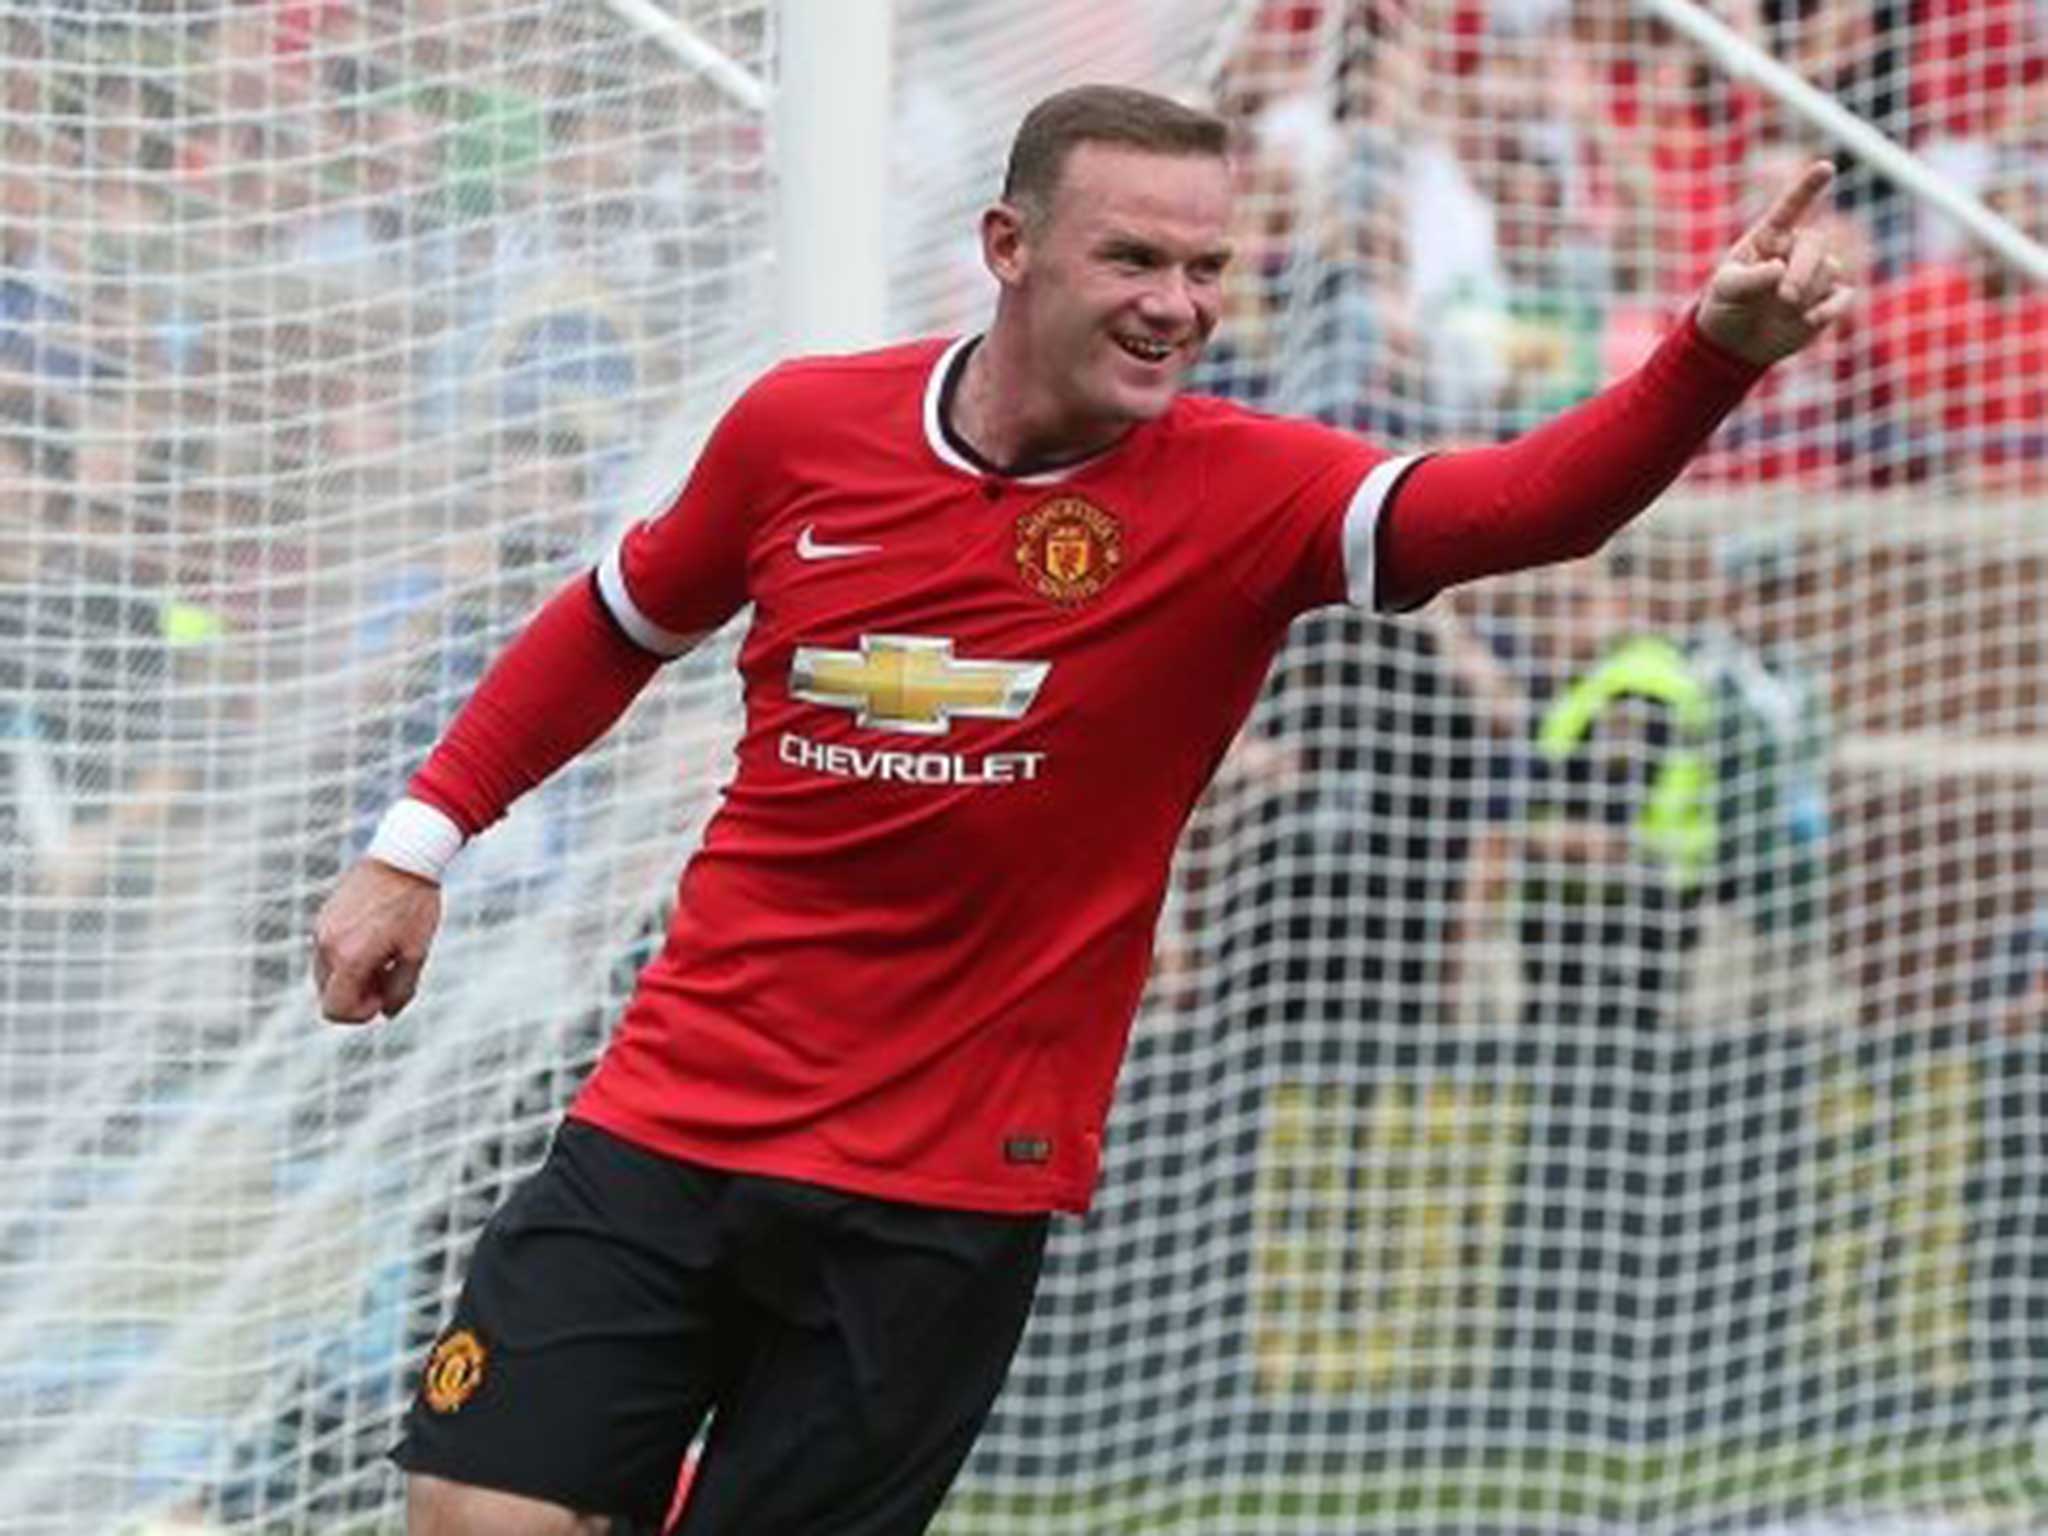 Wayne Rooney of Manchester United celebrates scoring